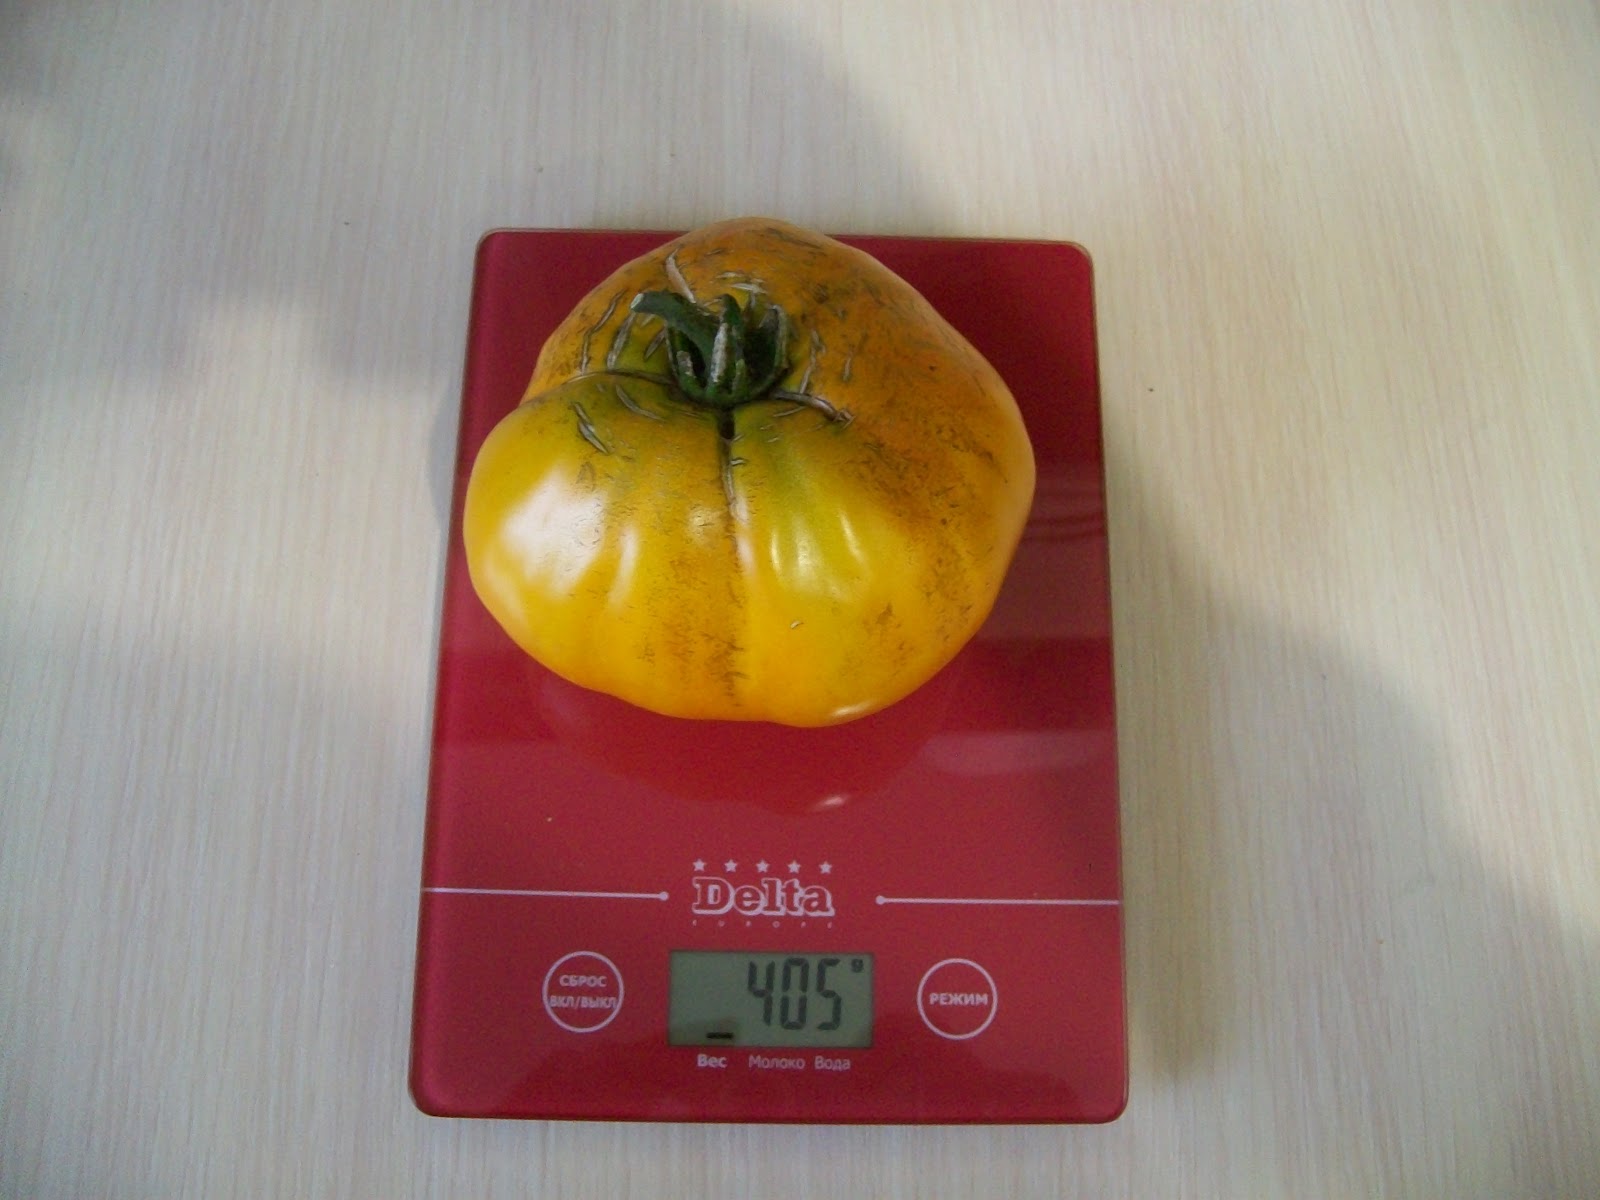 Характеристика сорта томата ралли, его урожайность